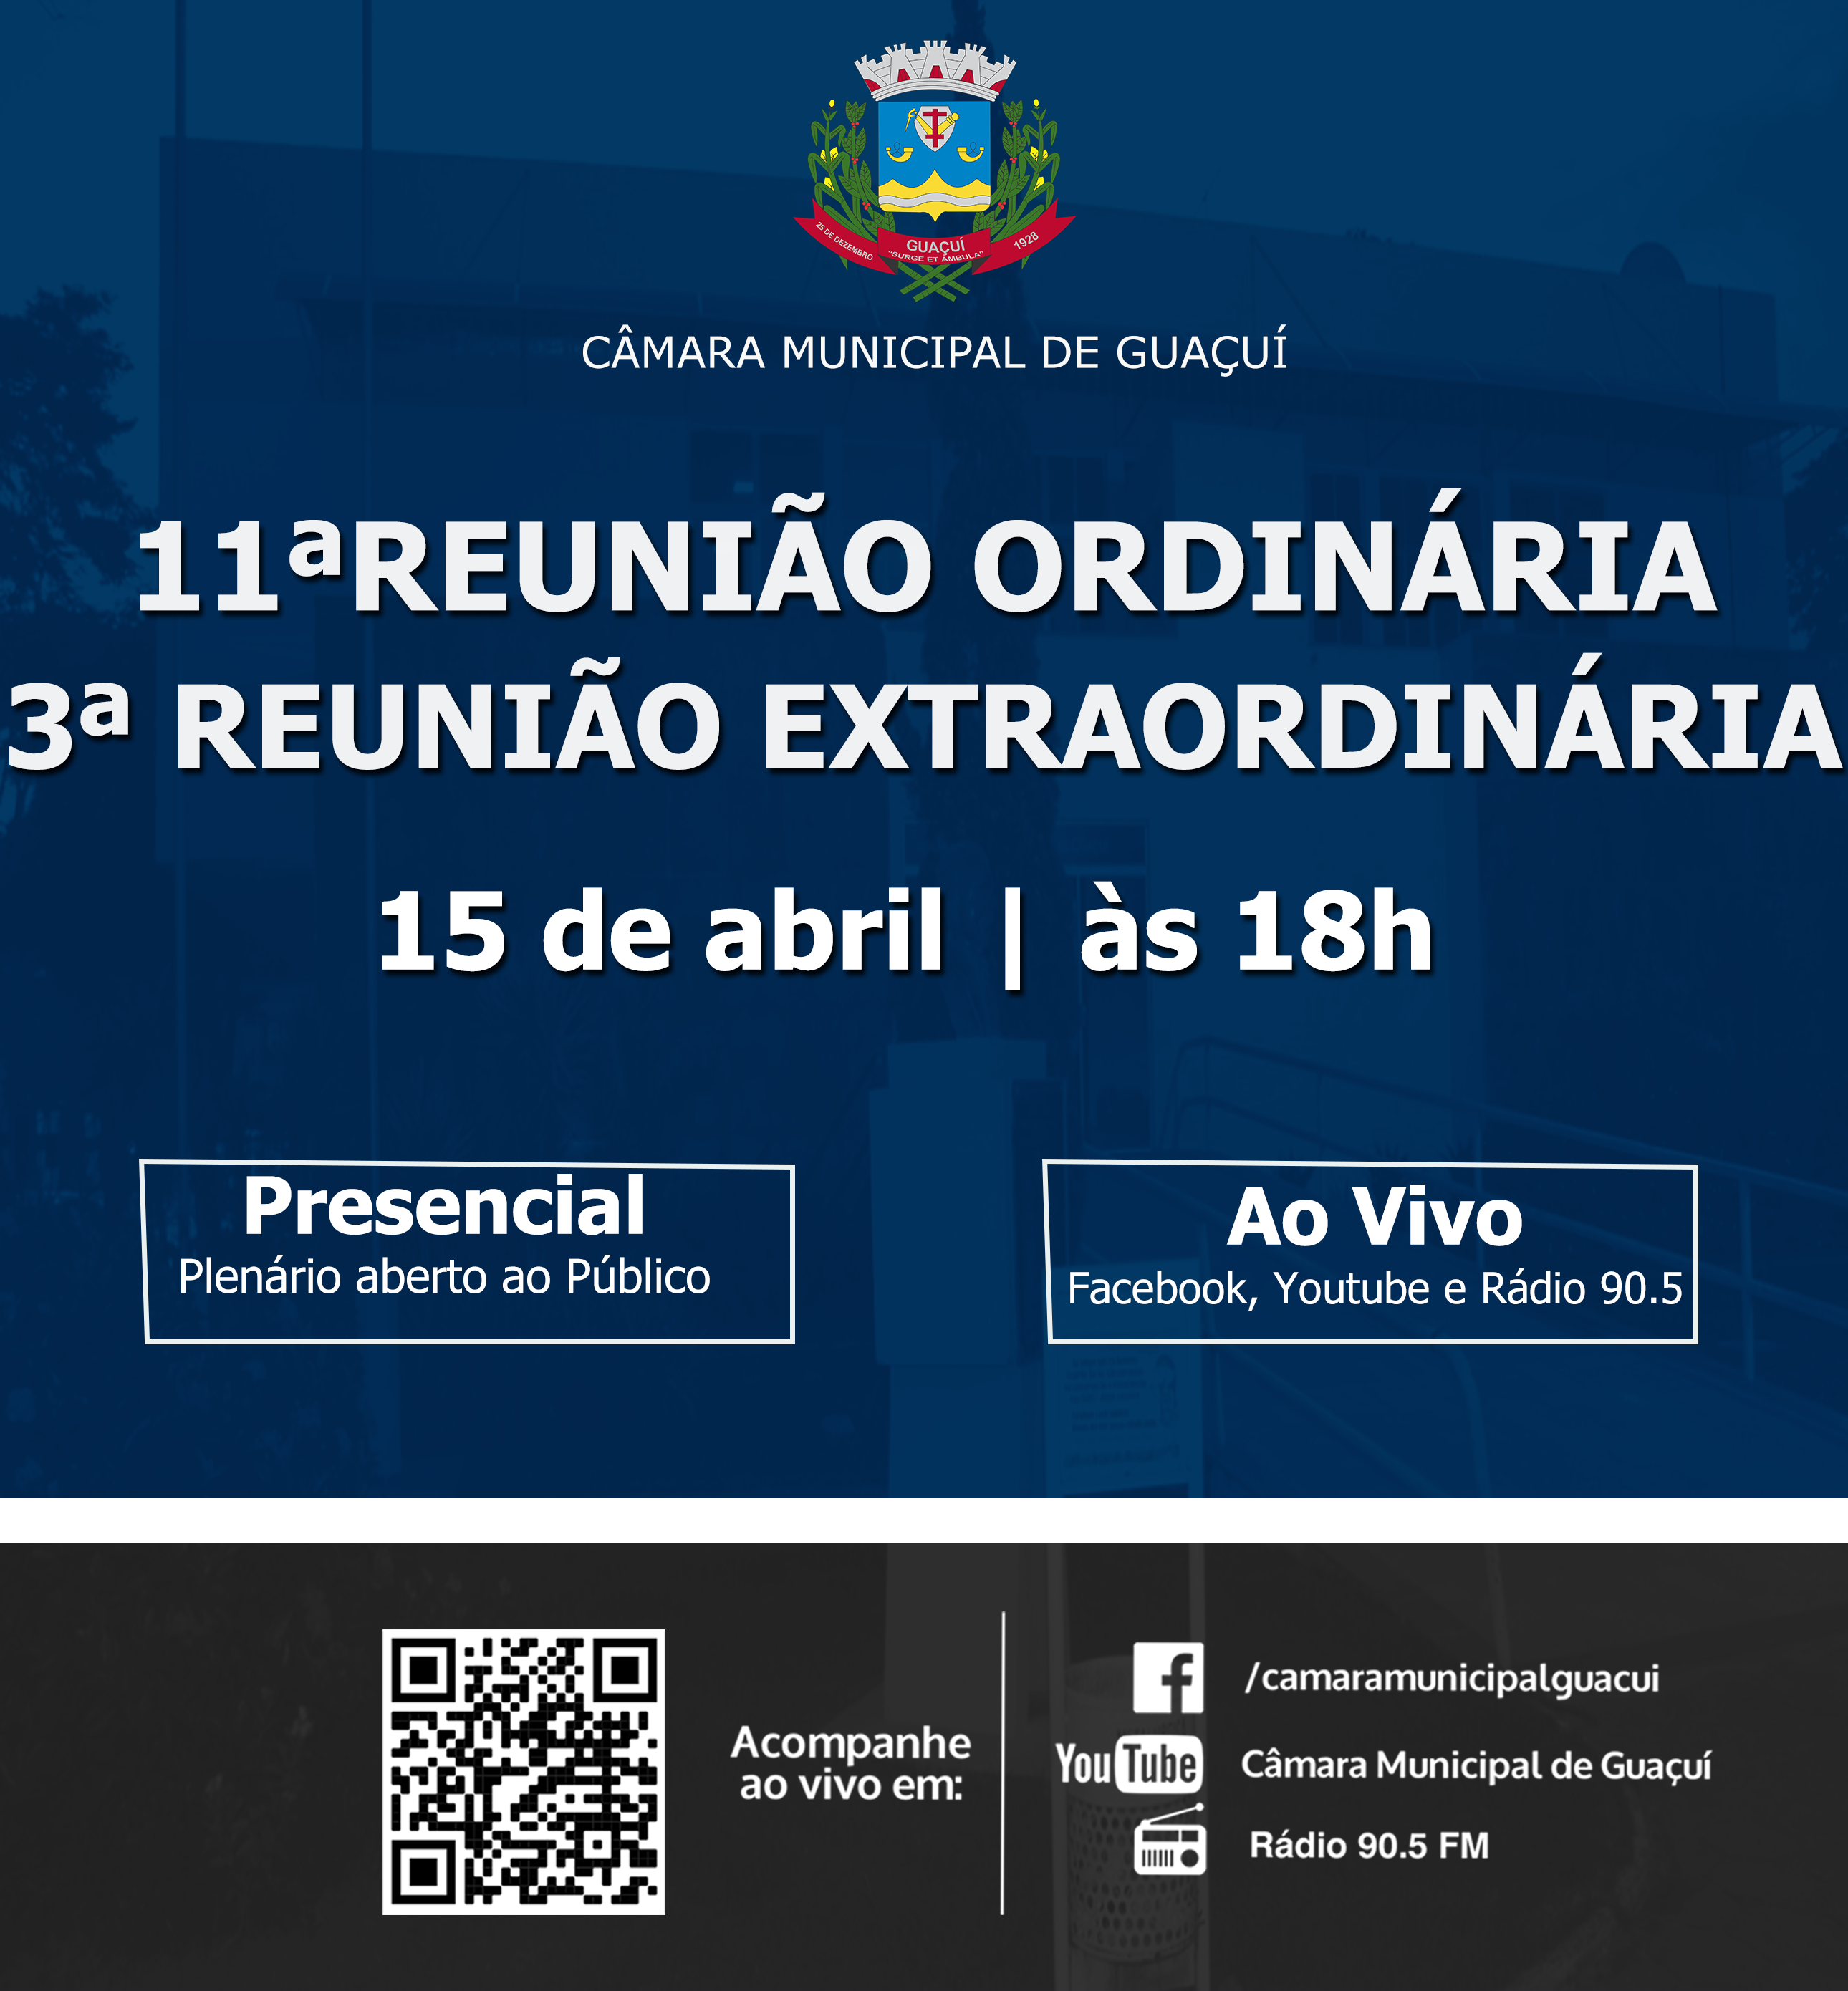 11ª REUNIÃO ORDINÁRIA E 3ª REUNIÃO EXTRAORDINÁRIA.